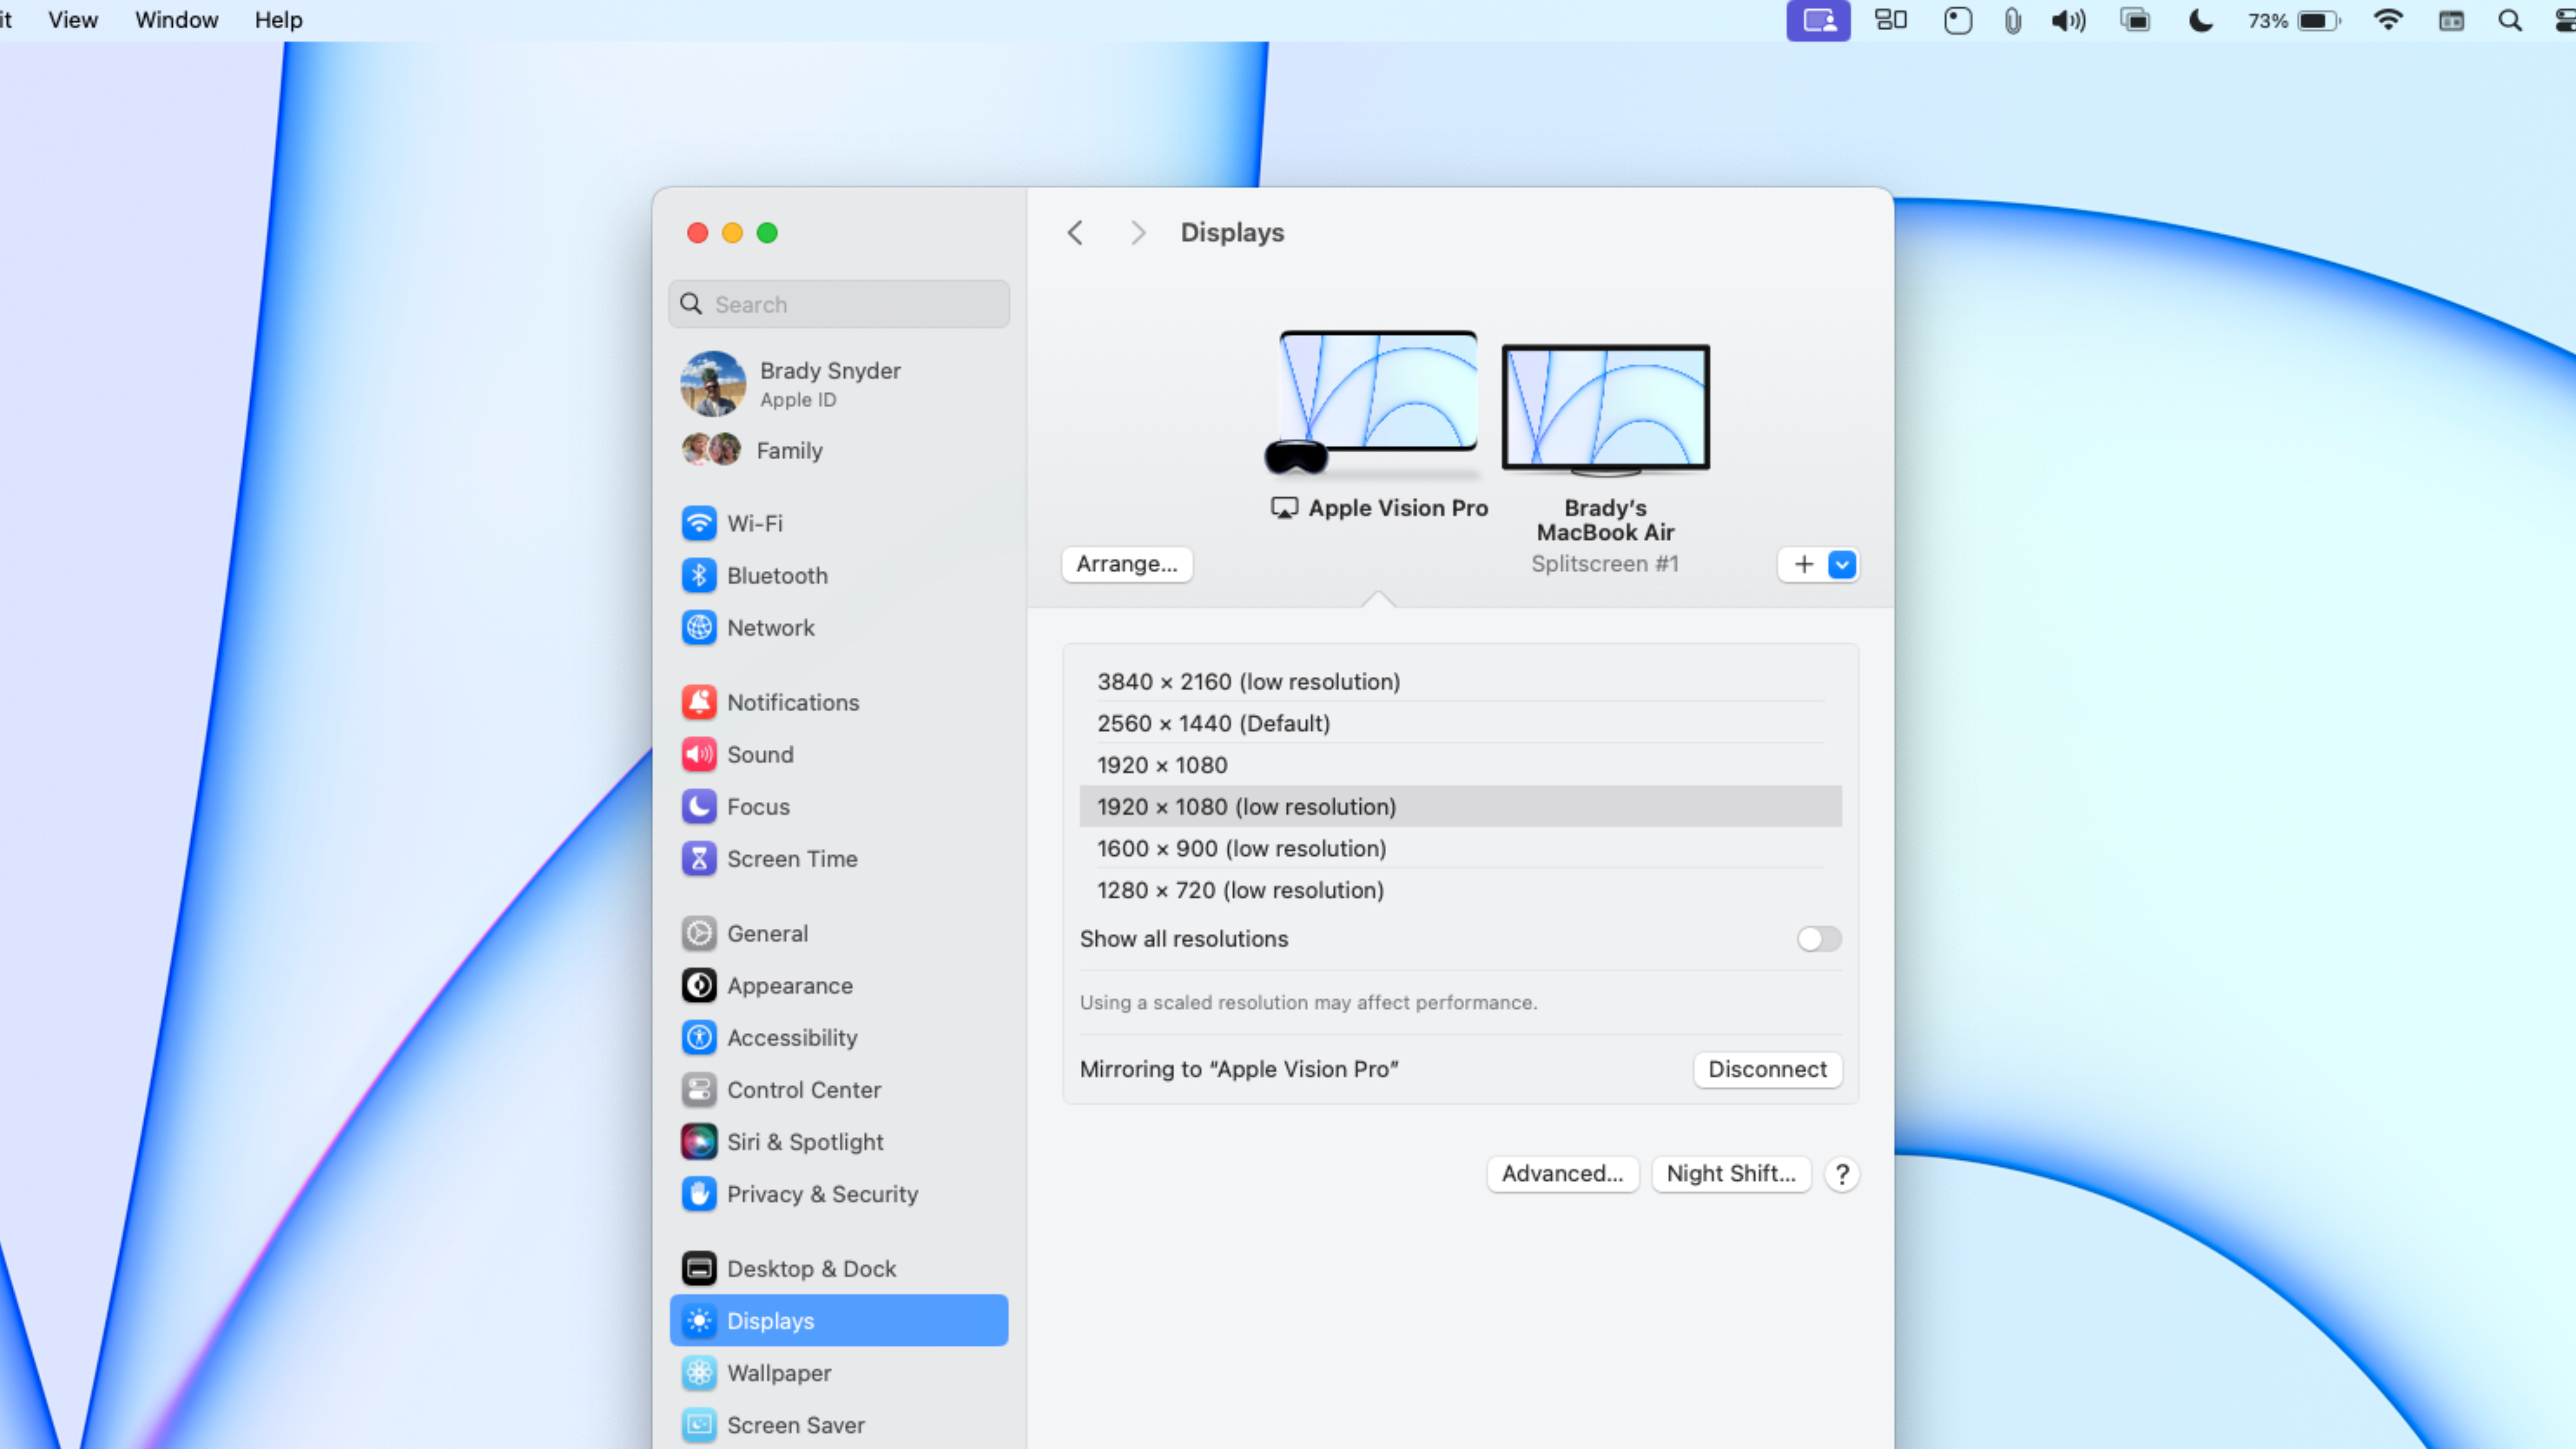 The macOS display settings in macOS.